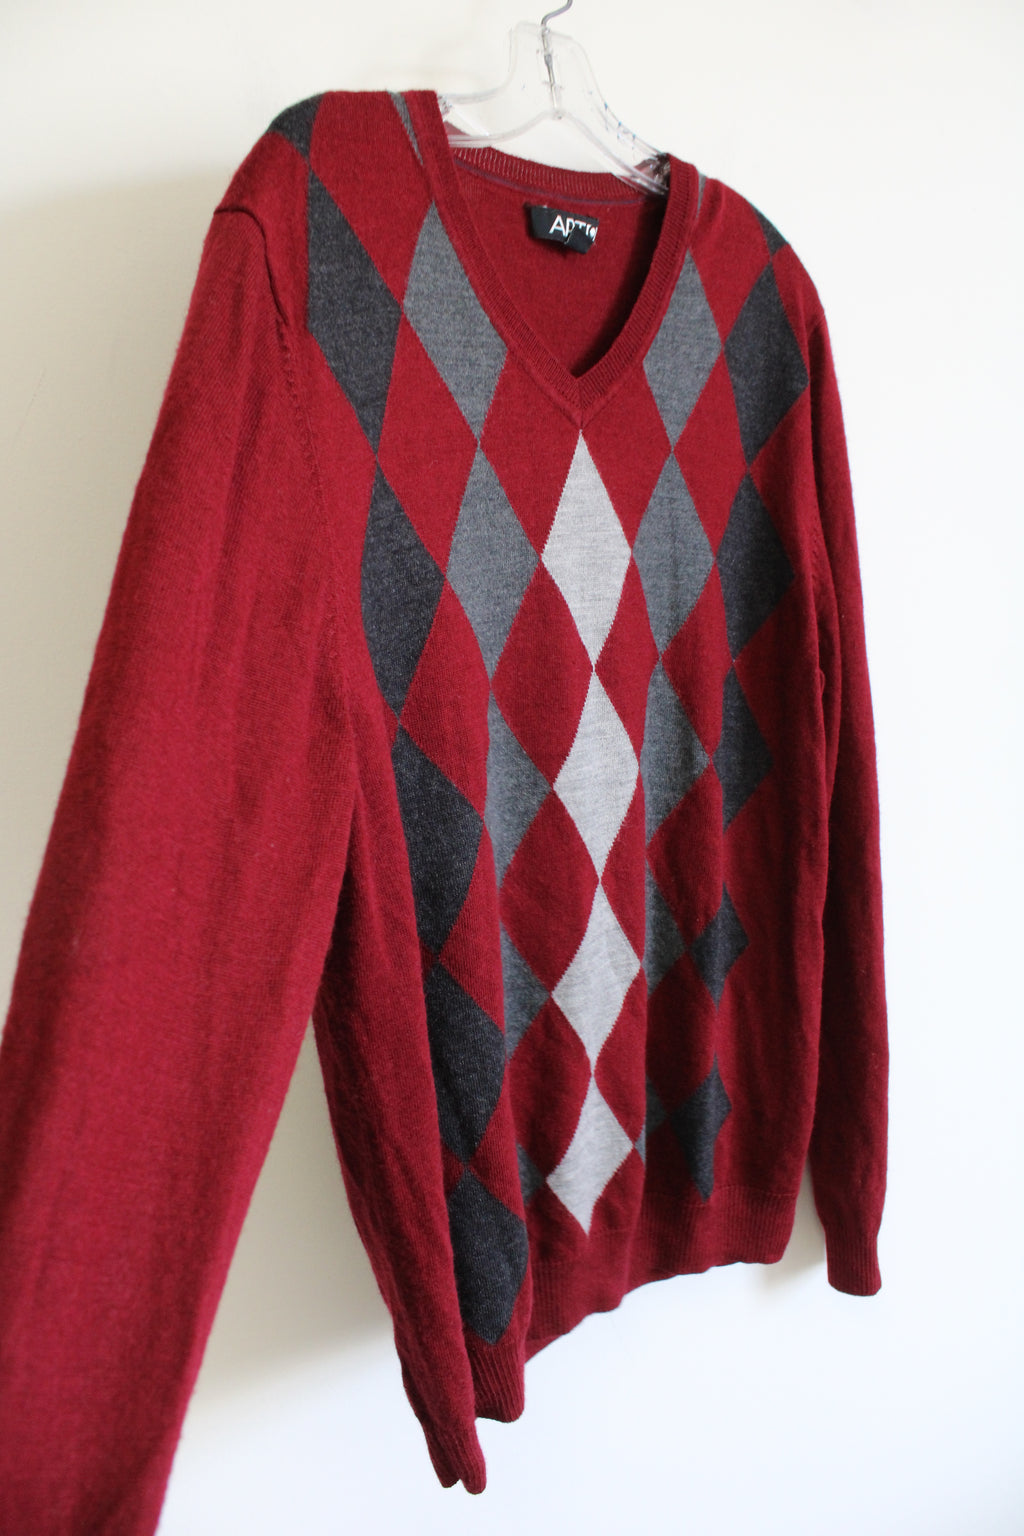 APT.9 Merino Wool Blend Red Argyle Sweater | XL